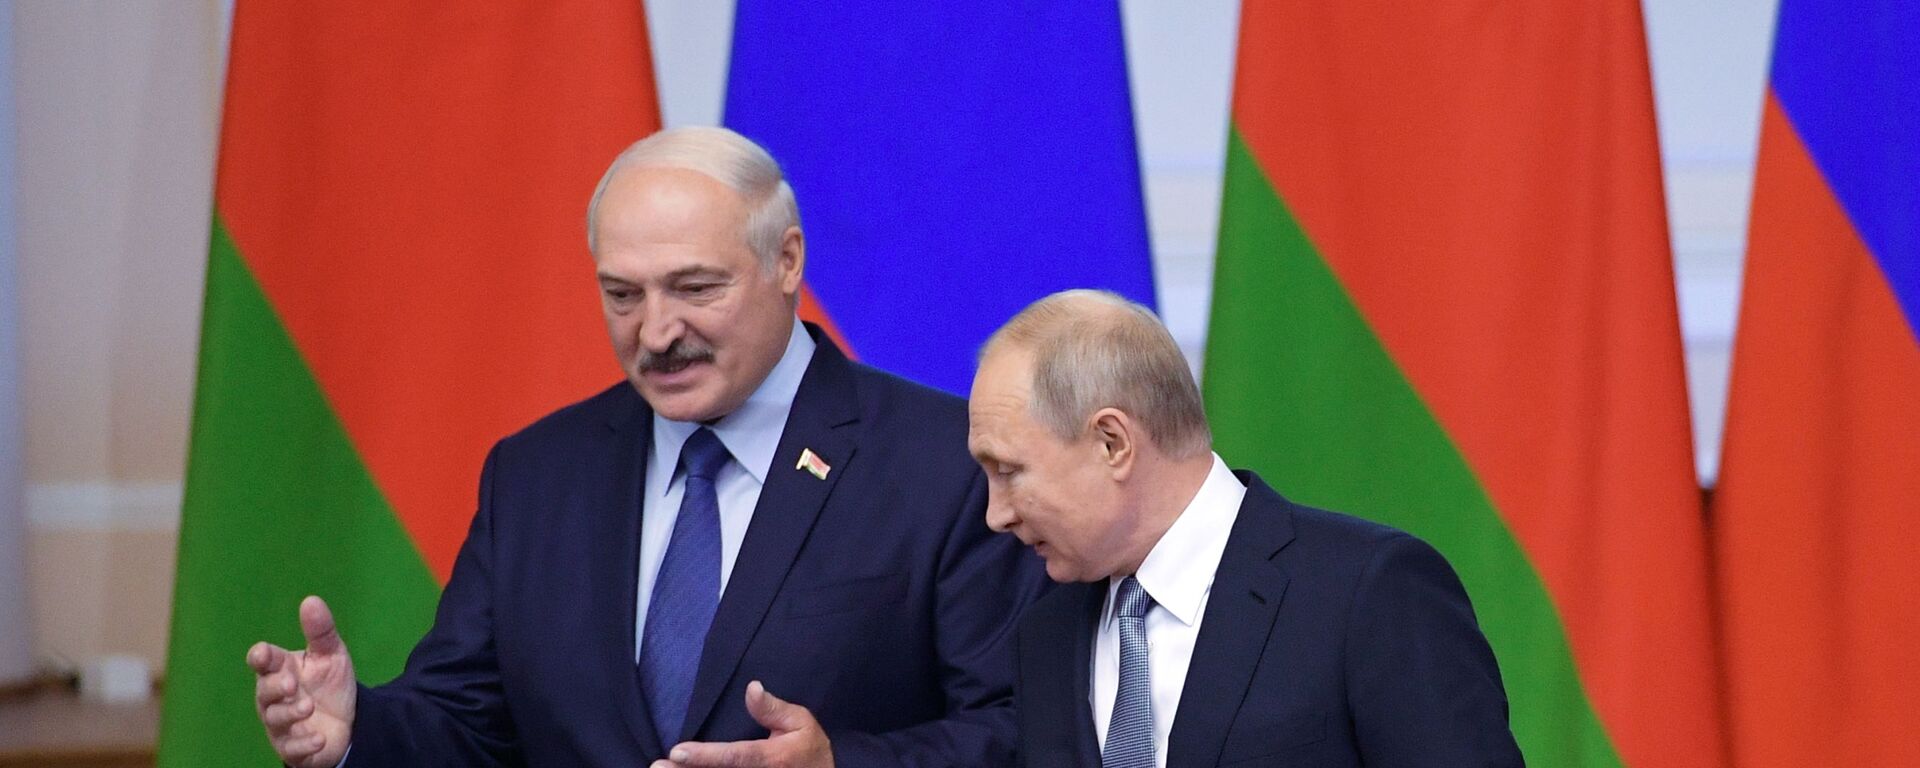 Президент РФ Владимир Путин и президент Беларуси Александр Лукашенко - Sputnik Беларусь, 1920, 18.02.2021